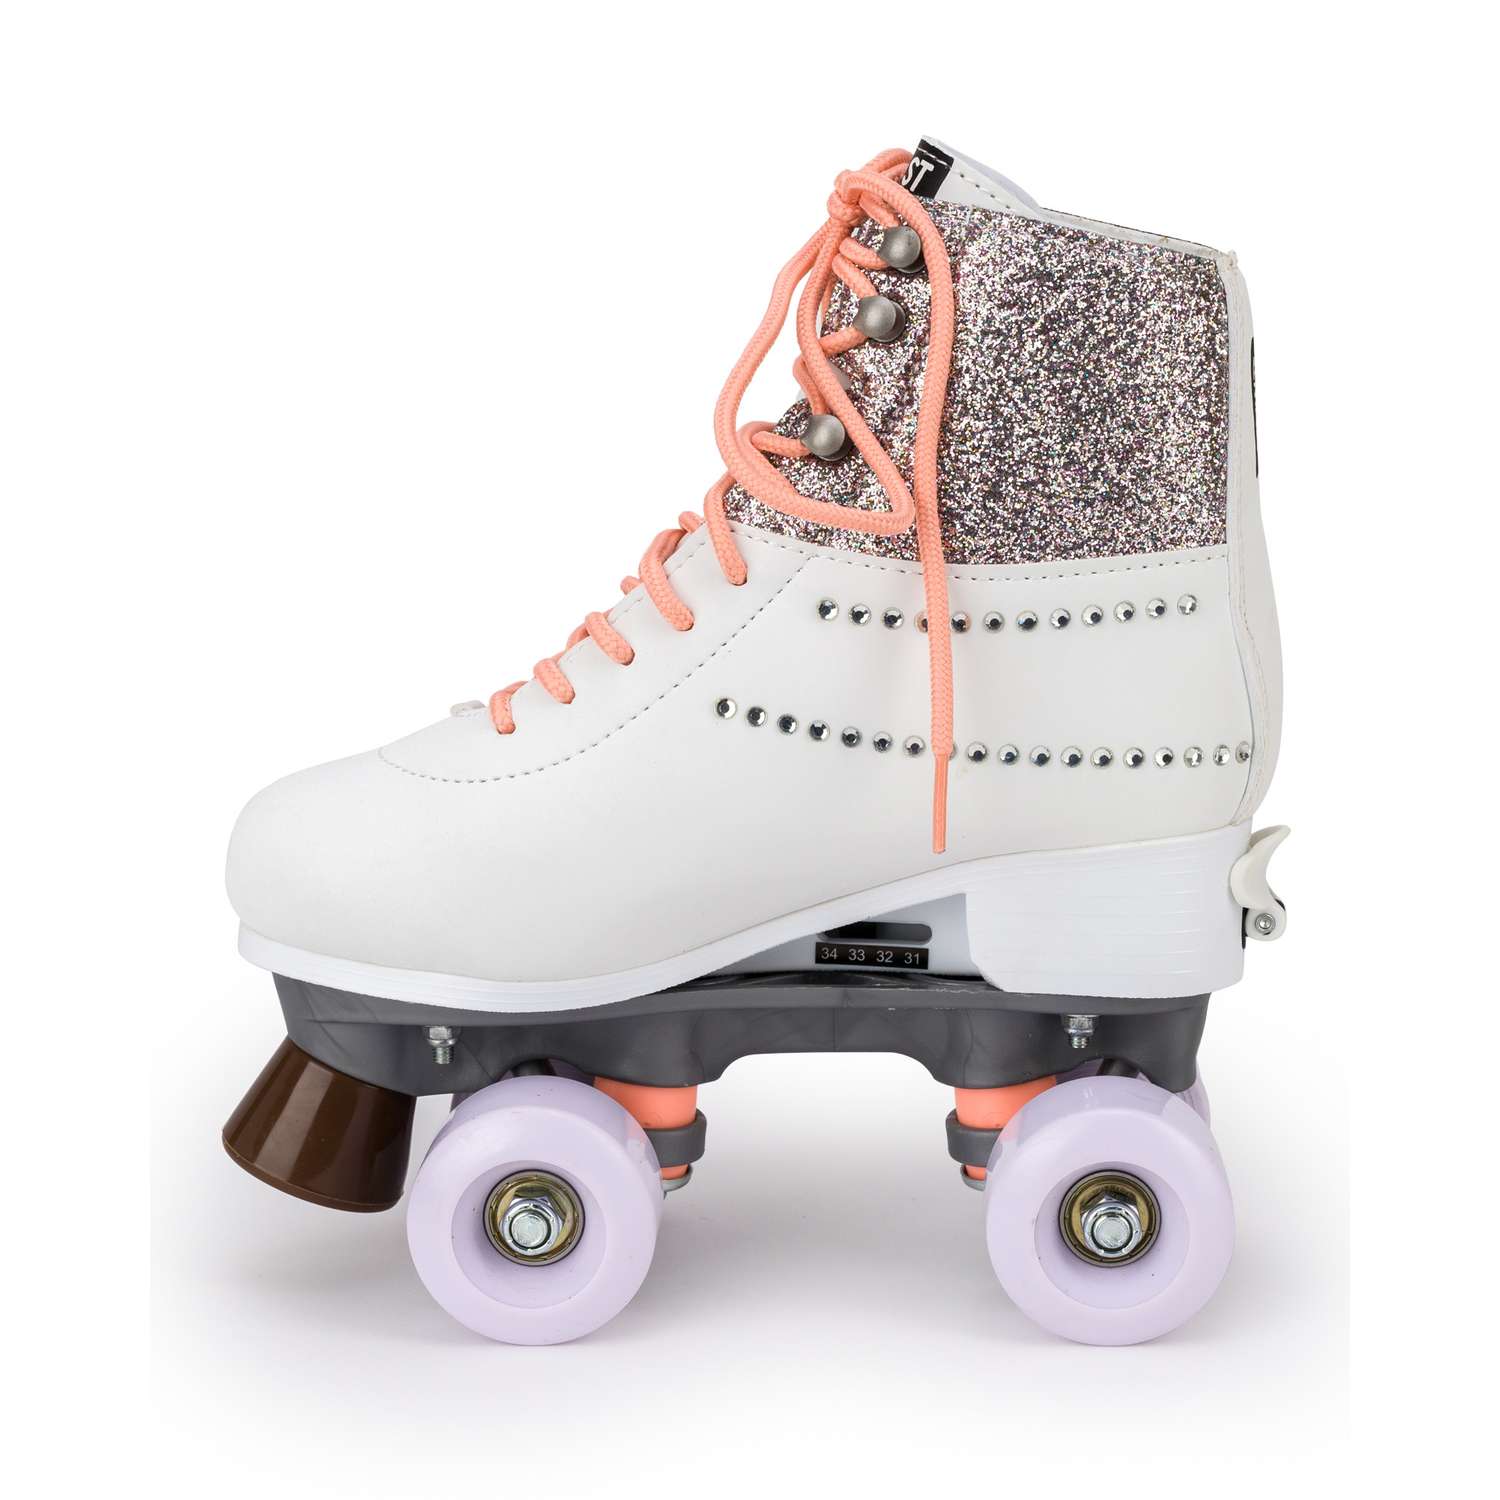 Роликовые коньки SXRide Roller skate YXSKT04CAMO цвет серебристые размер 31-34 - фото 3